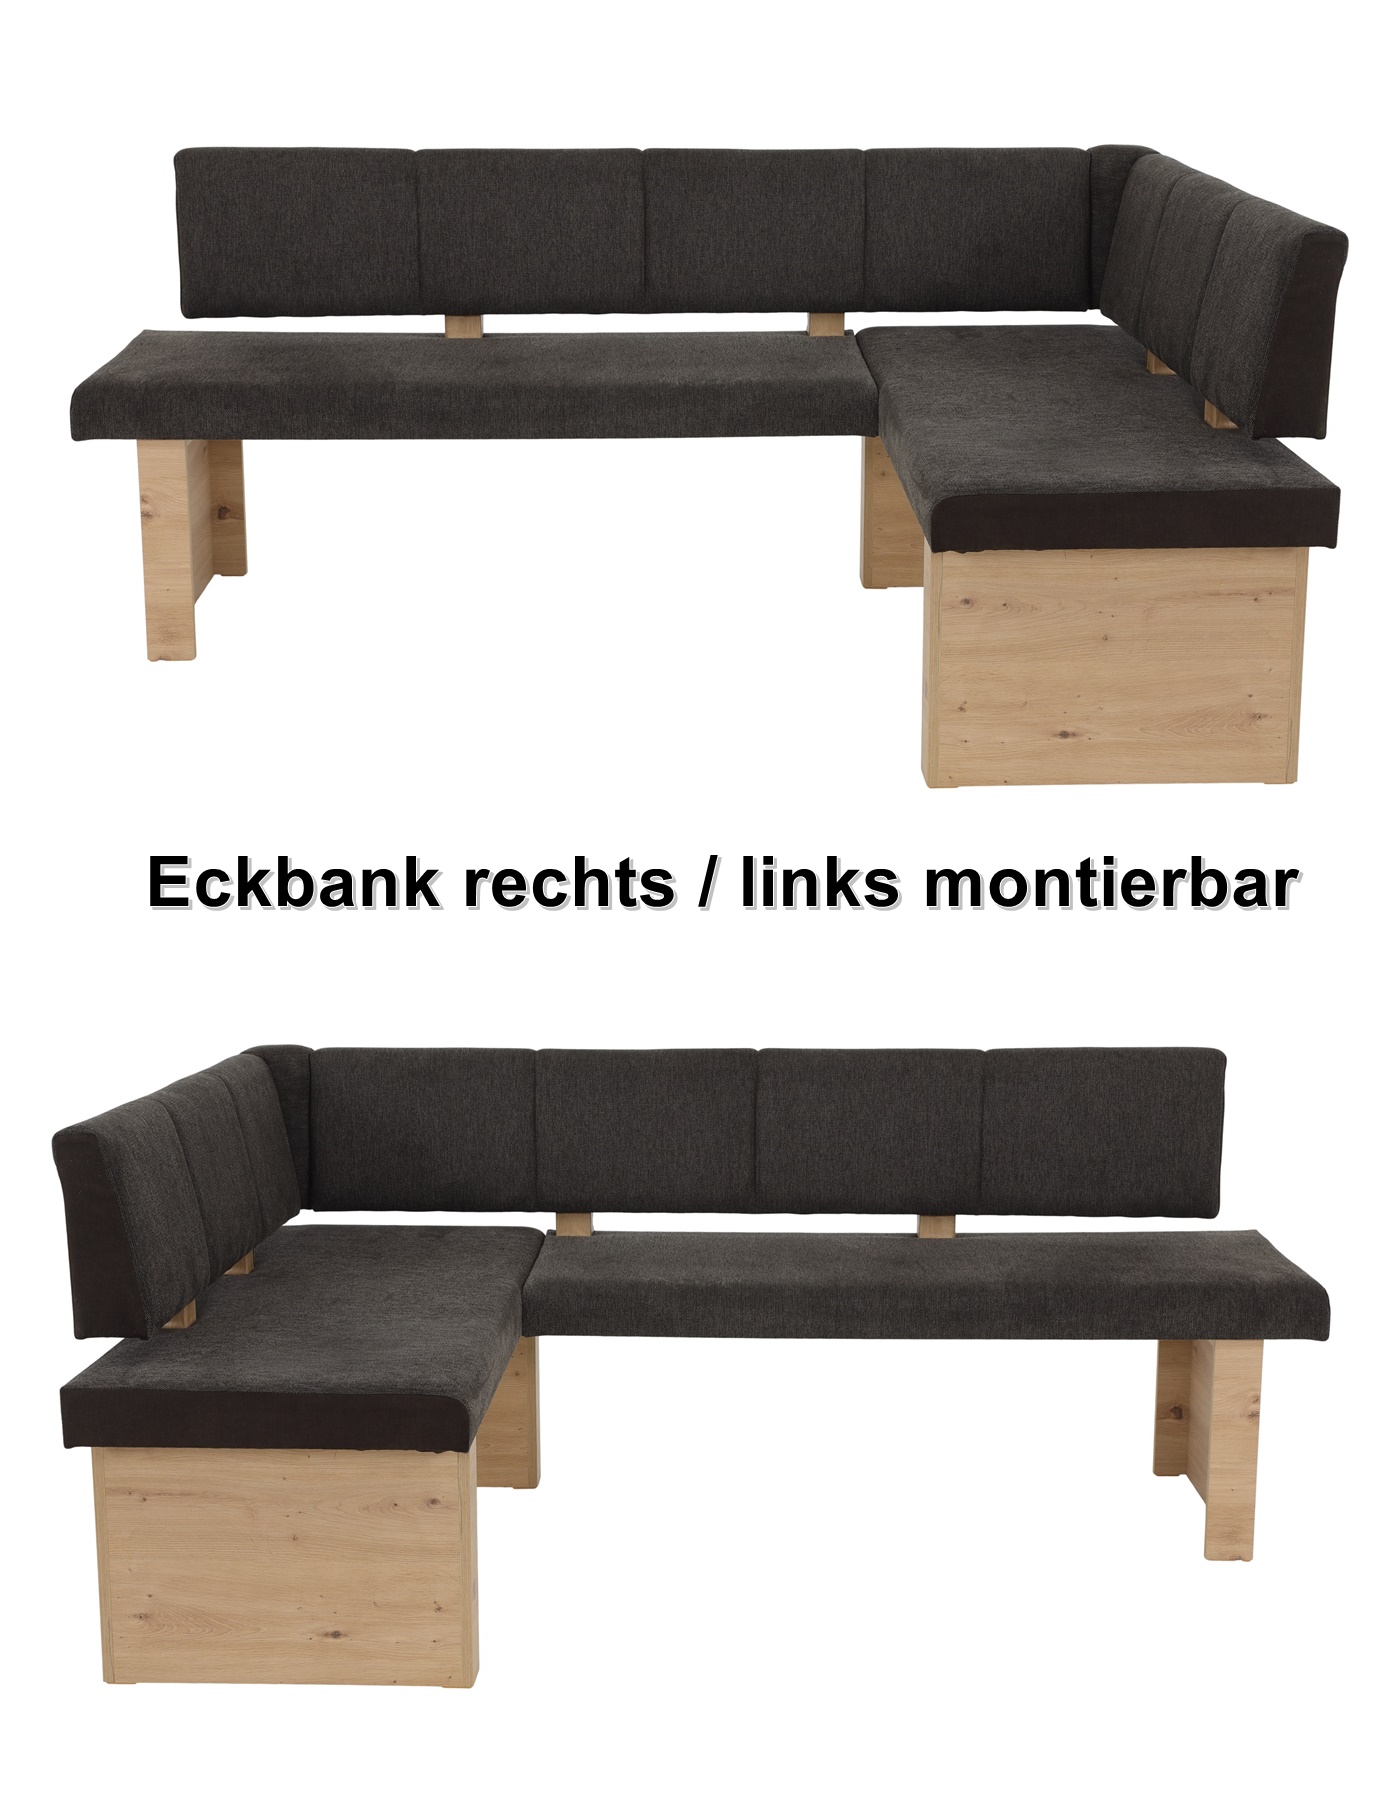 Eckbank 140x200 re/li montierbar LINN-EB von Hela Webstoff braun